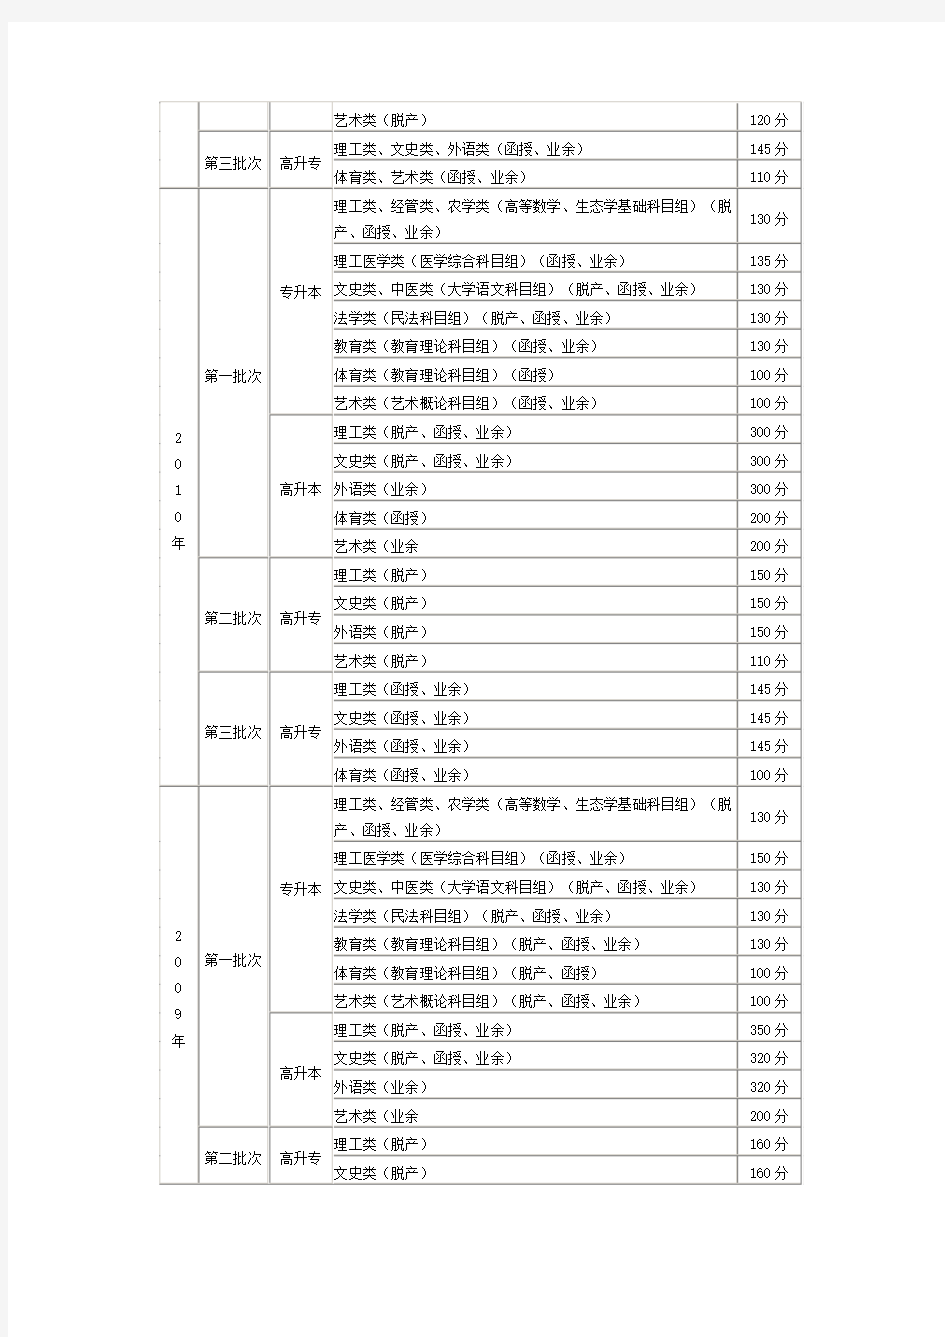 历年广东省成人高考录取分数线比较(截至2014年)